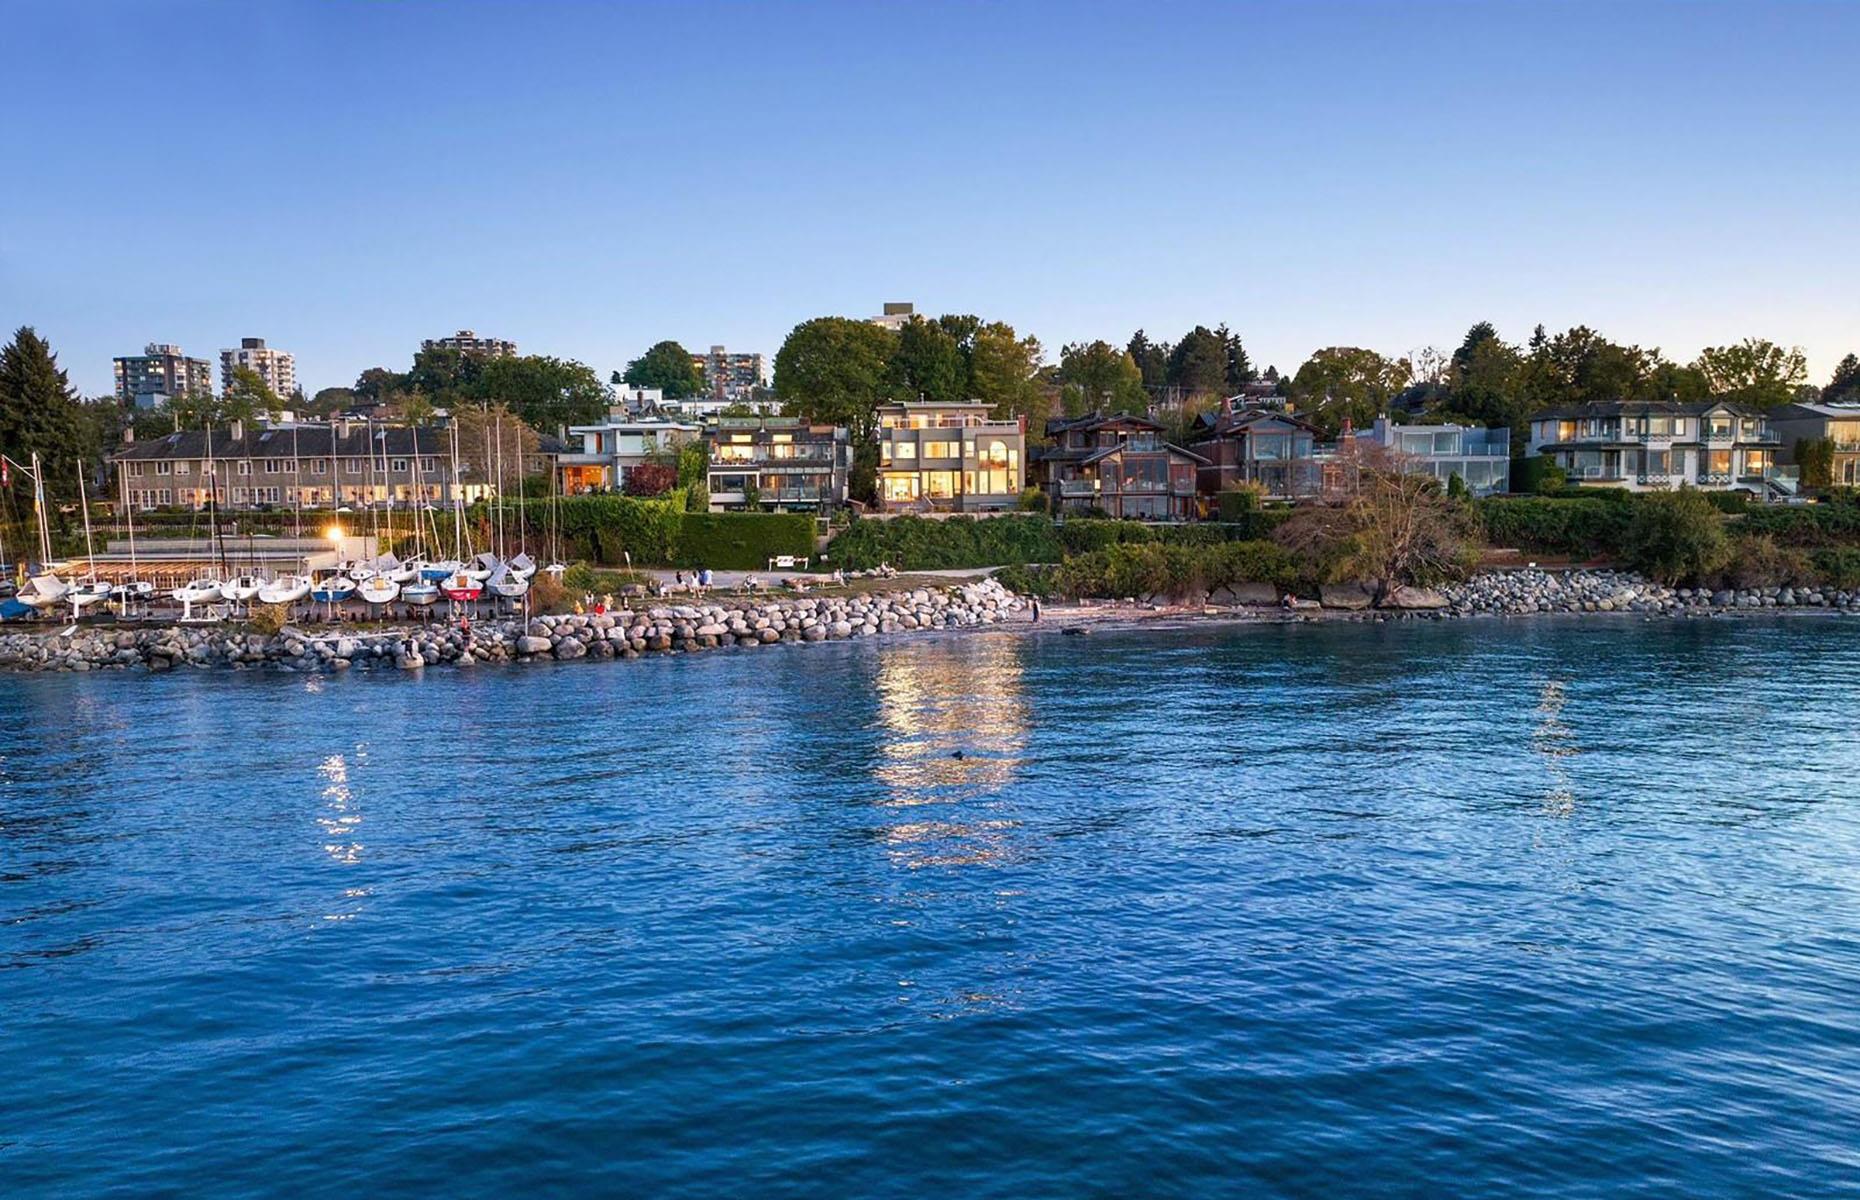 <p>Warum Vancouvers „goldene Meile“ einer der teuersten Wohnorte in Kanada ist, lässt sich leicht erklären: Die Point Grey Road verläuft entlang der Uferpromenade des begehrten Stadtteils Kitsilano im Westen der Stadt mit Blick auf die English Bay. Die Gegend ist bekannt für ihren schönen Strand, ein öffentliches Salzwasserschwimmbad, einen Wanderweg am Meer und 17 Parks. All das ist sowohl bei jungen Berufstätigen als auch Touristen und Prominenten sehr beliebt.</p>  <p>Die Point Grey Road führt weiter nach Westen in das nächste Viertel, Point Grey, das drei Strände, einen Yachtclub, einen Tennisclub und eine große Auswahl an Luxusimmobilien bietet. Laut dem Immobilienportal Zolo lag der durchschnittliche Hauspreis in Kitsilano im Januar 2024 bei um die 964.000 Euro und in Point Grey bei knapp 27 Millionen Euro. Schauen wir uns also an, wer hier wohnt …</p>